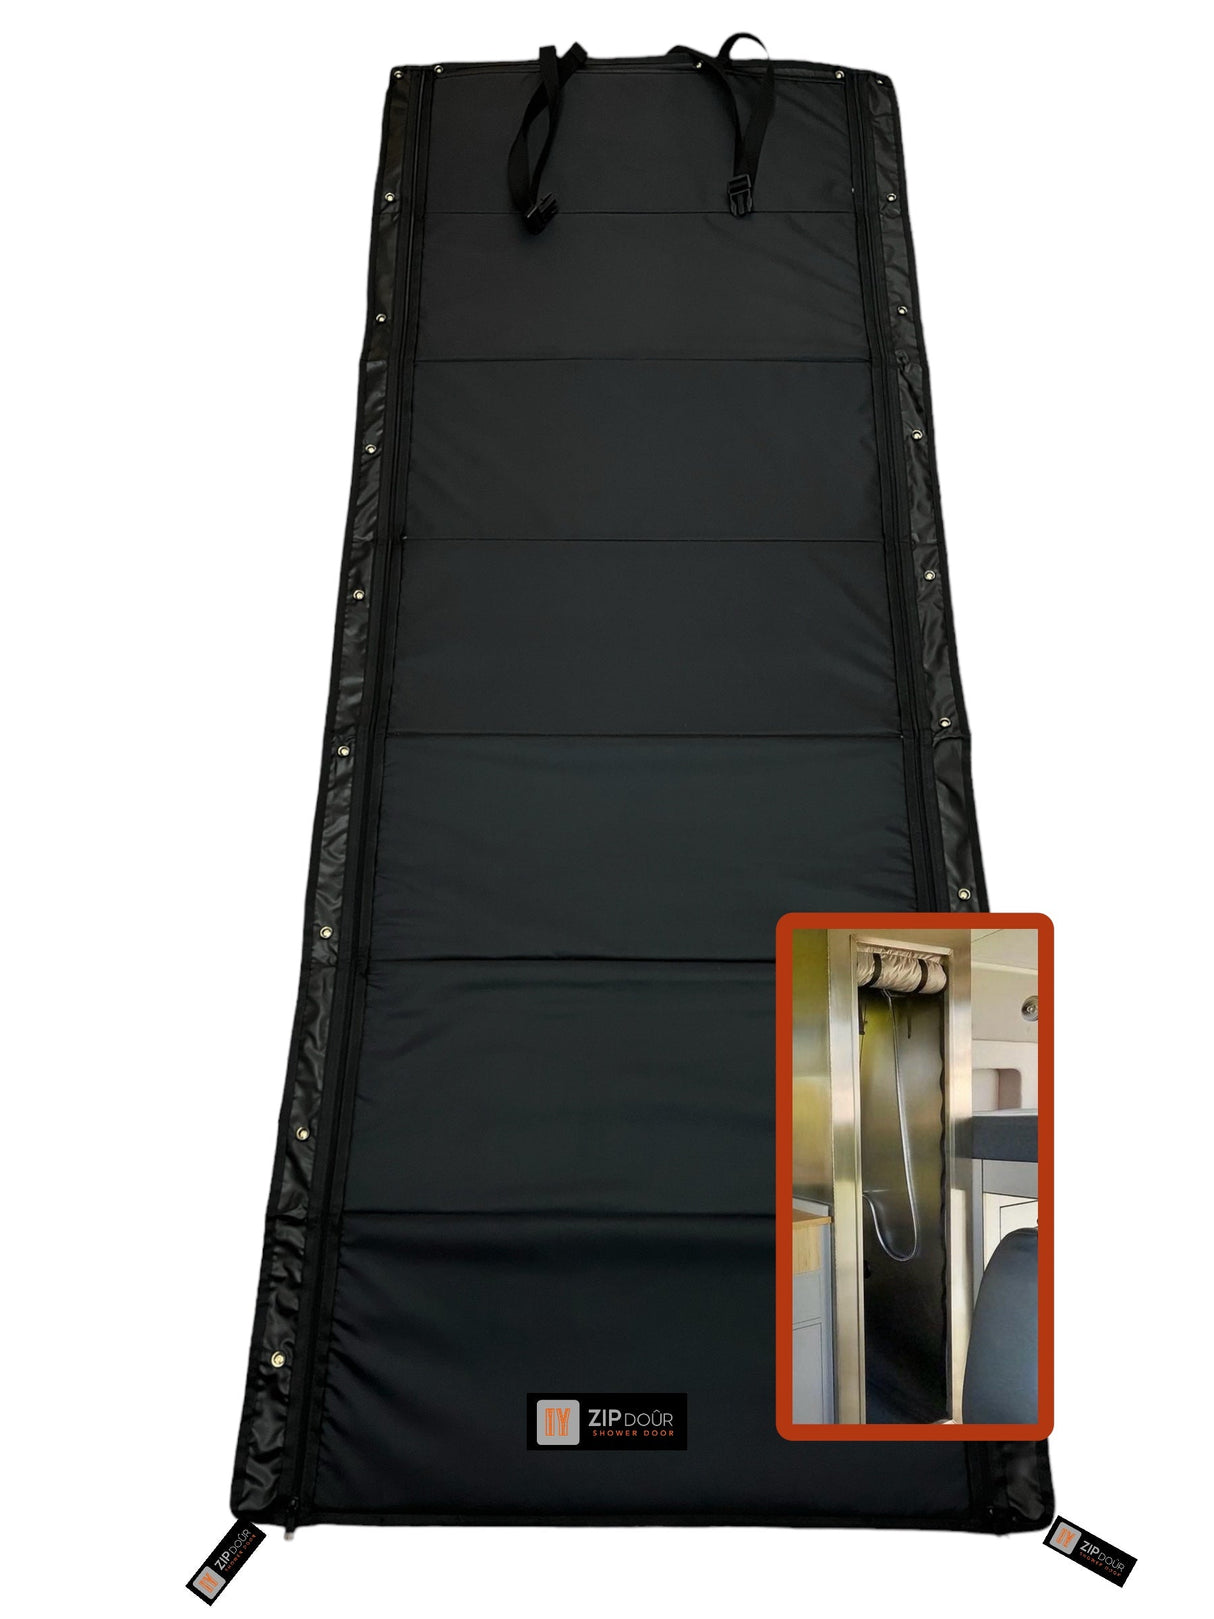 ZIPdoûr Shower Door 4x4 Camper Van / RV Double Insulated Zip Close for 1800 x 600mm Opening